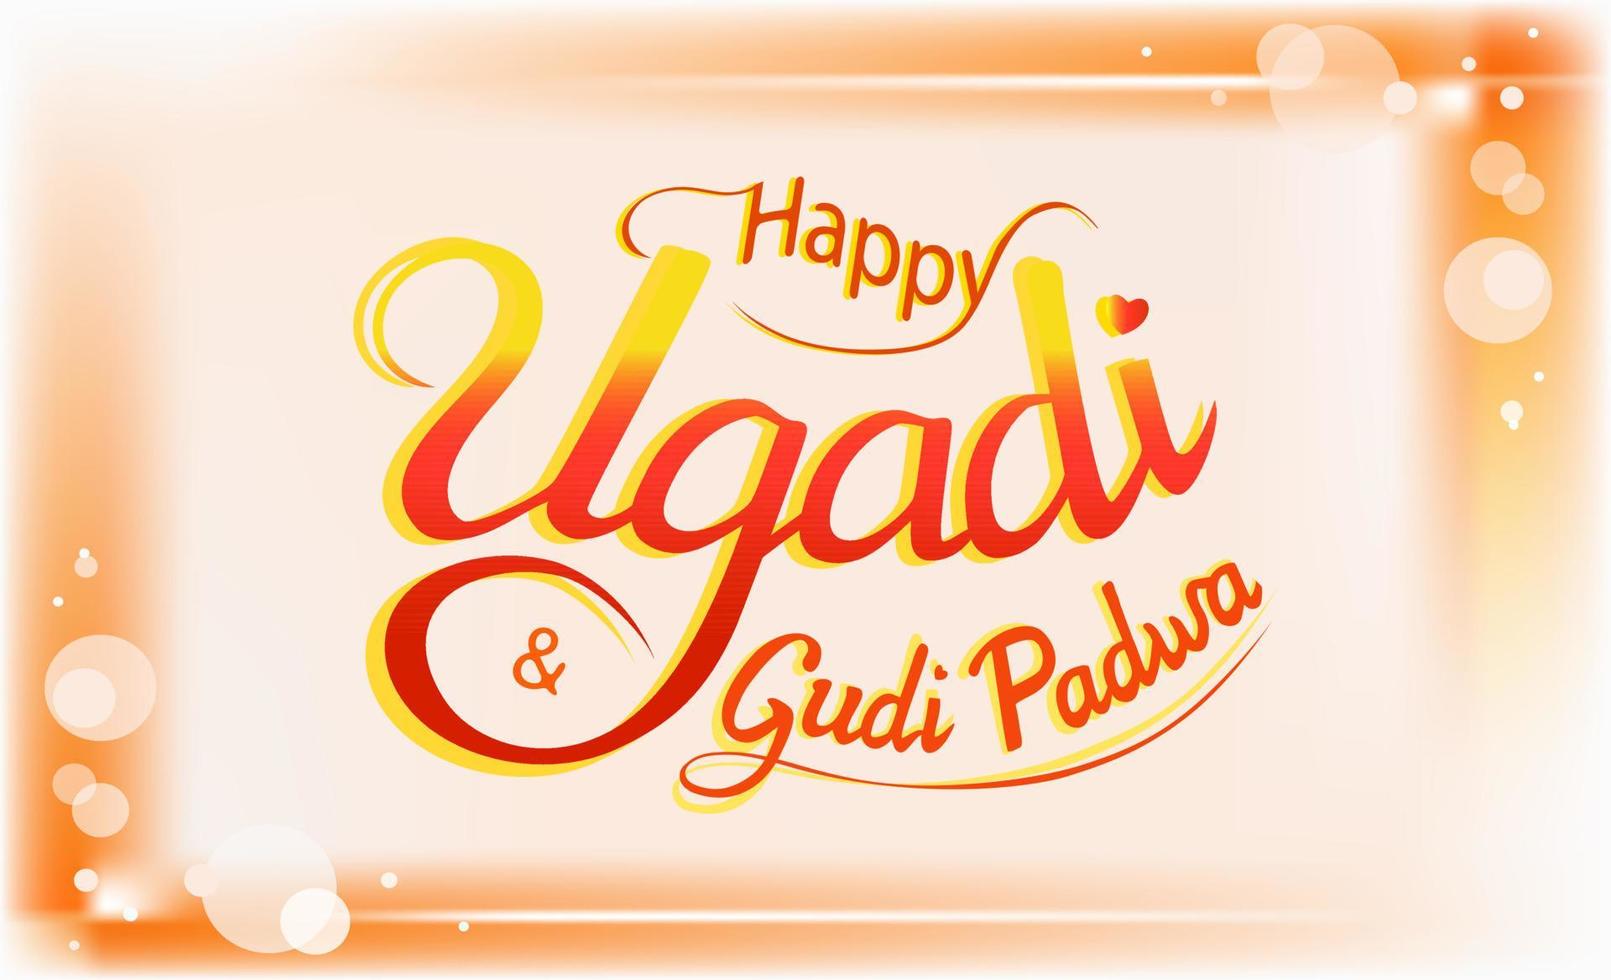 glückliches ugadi, gudi padwa, hinduistischer neujahrsfestgruß auf chaitra monat. elegante leuchtend rote und gelbe schrift mit schattierungen, schnörkeln, orangefarbenem rahmen mit glänzenden sternen, für druck, karte, poster, web vektor